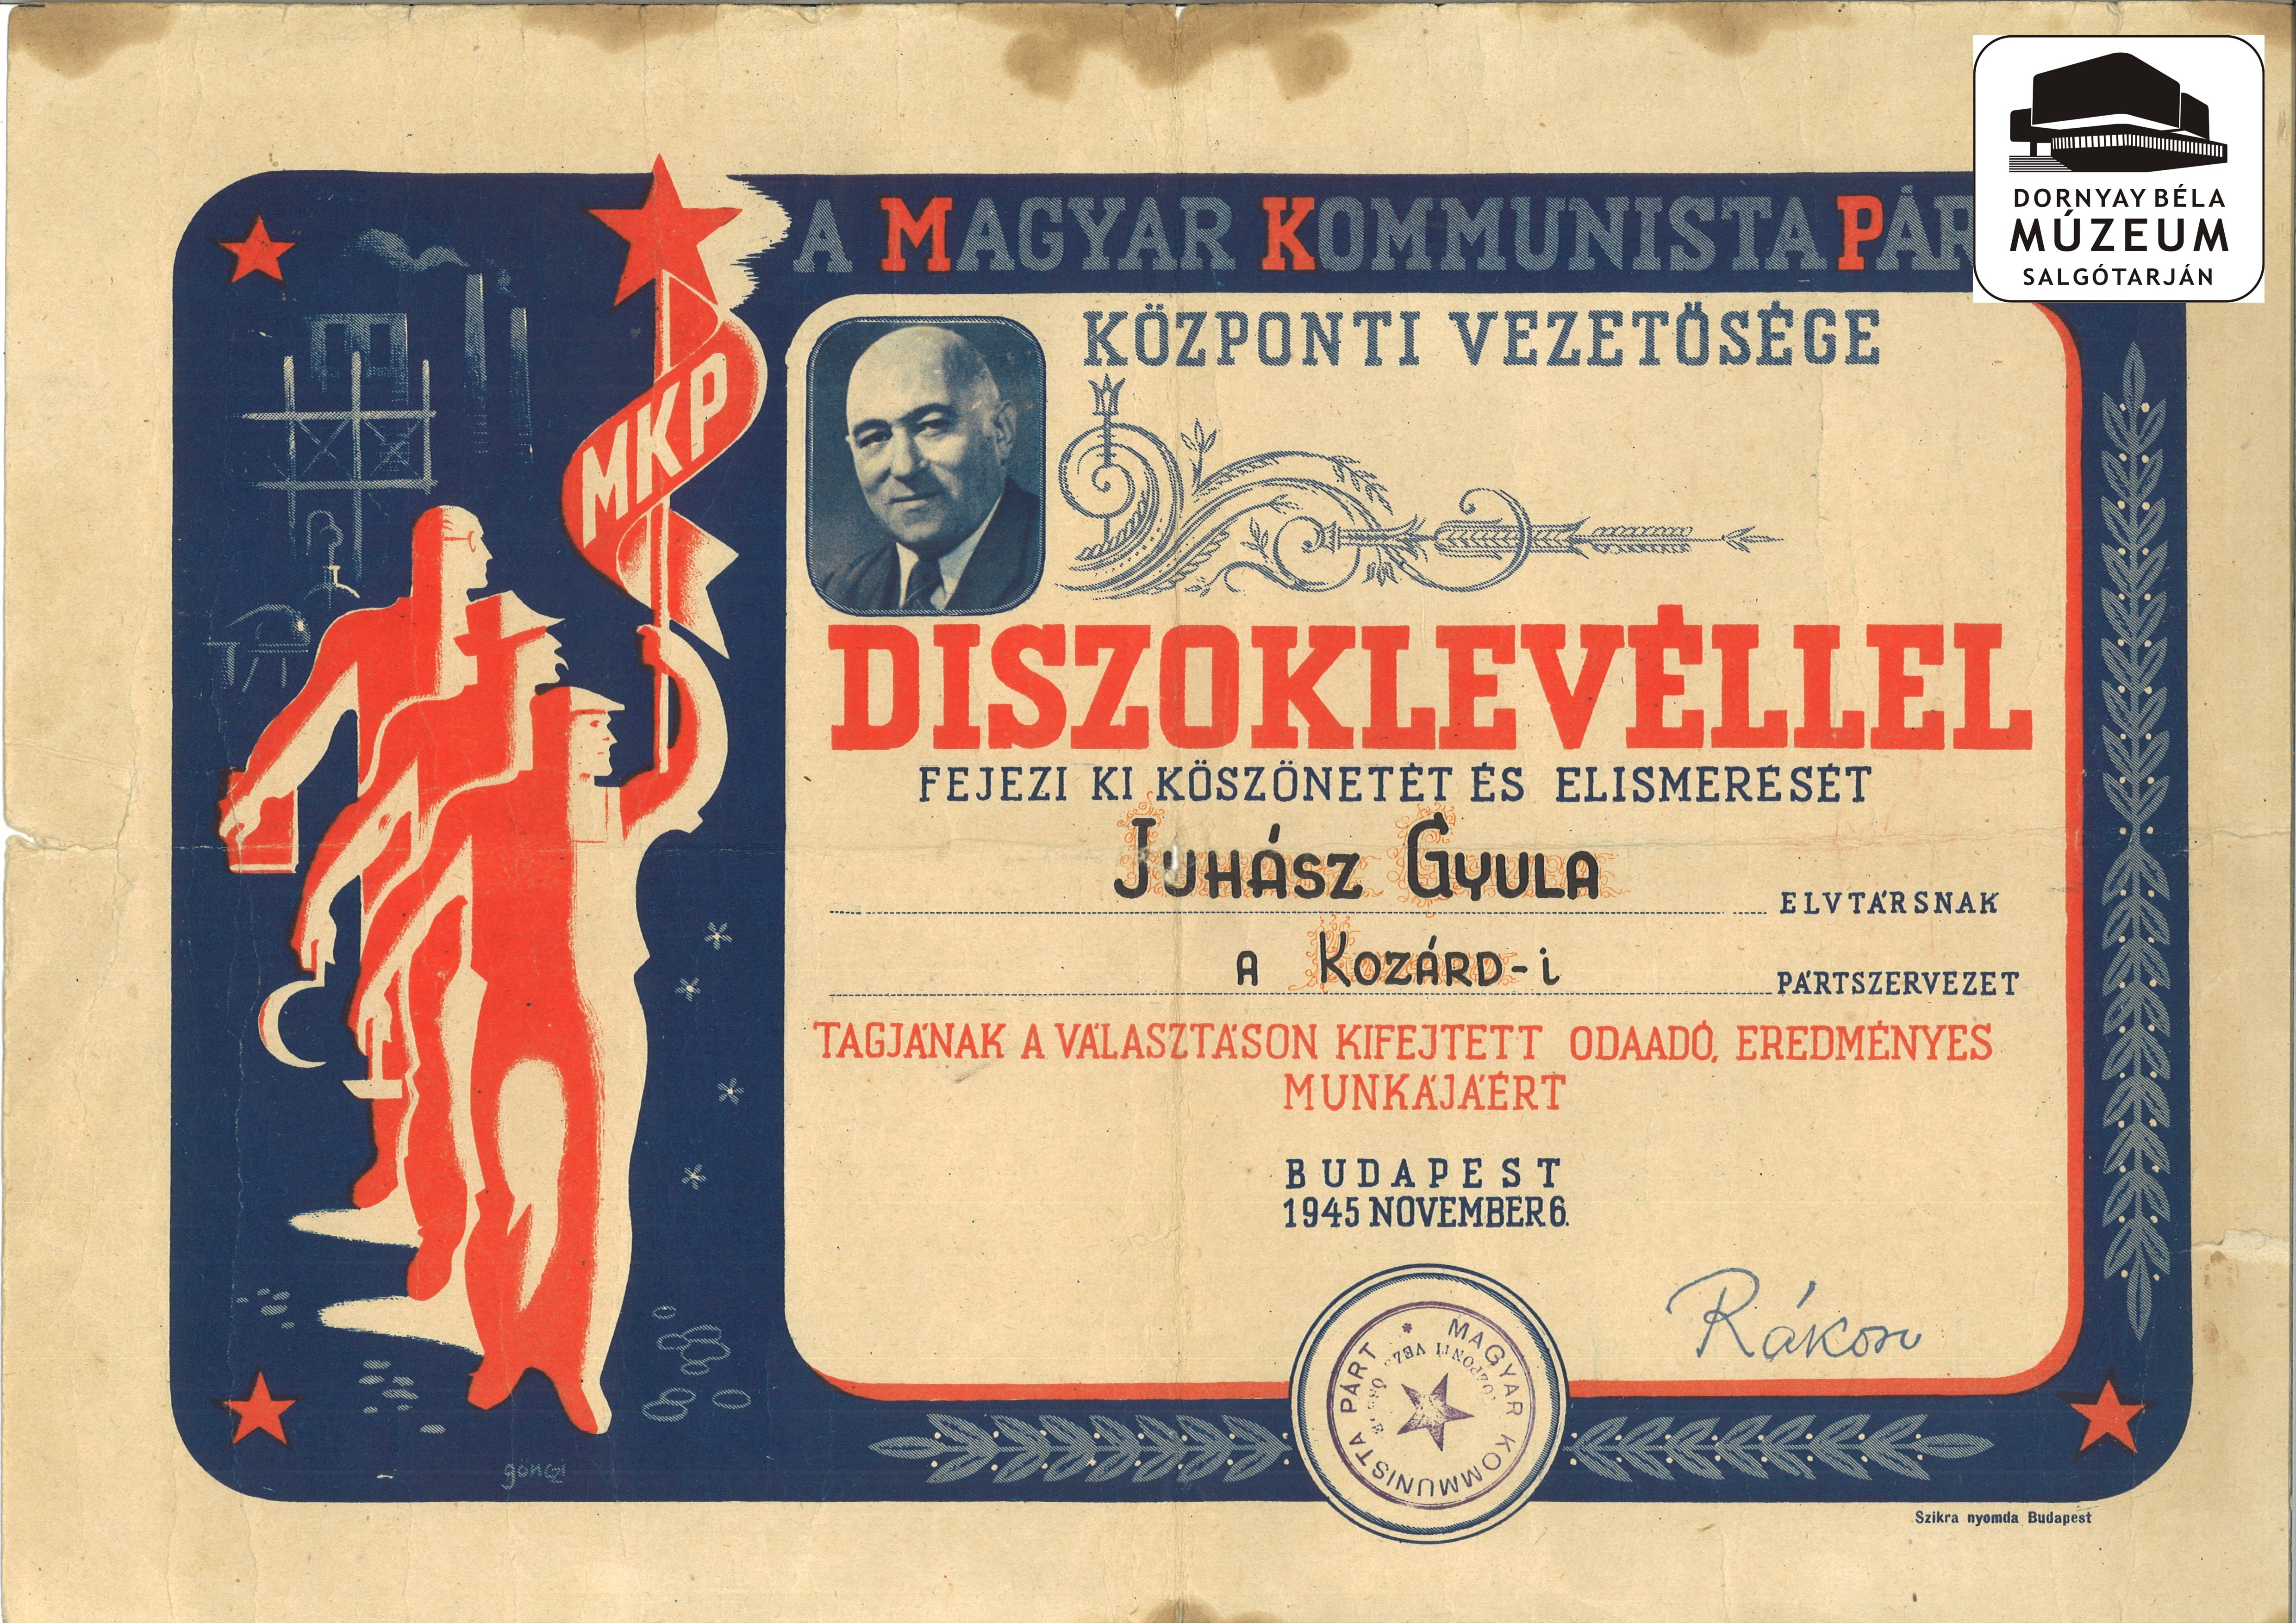 Juhász Gyula , díszoklevele, az 1945-ös választási munkáért (Dornyay Béla Múzeum, Salgótarján CC BY-NC-SA)